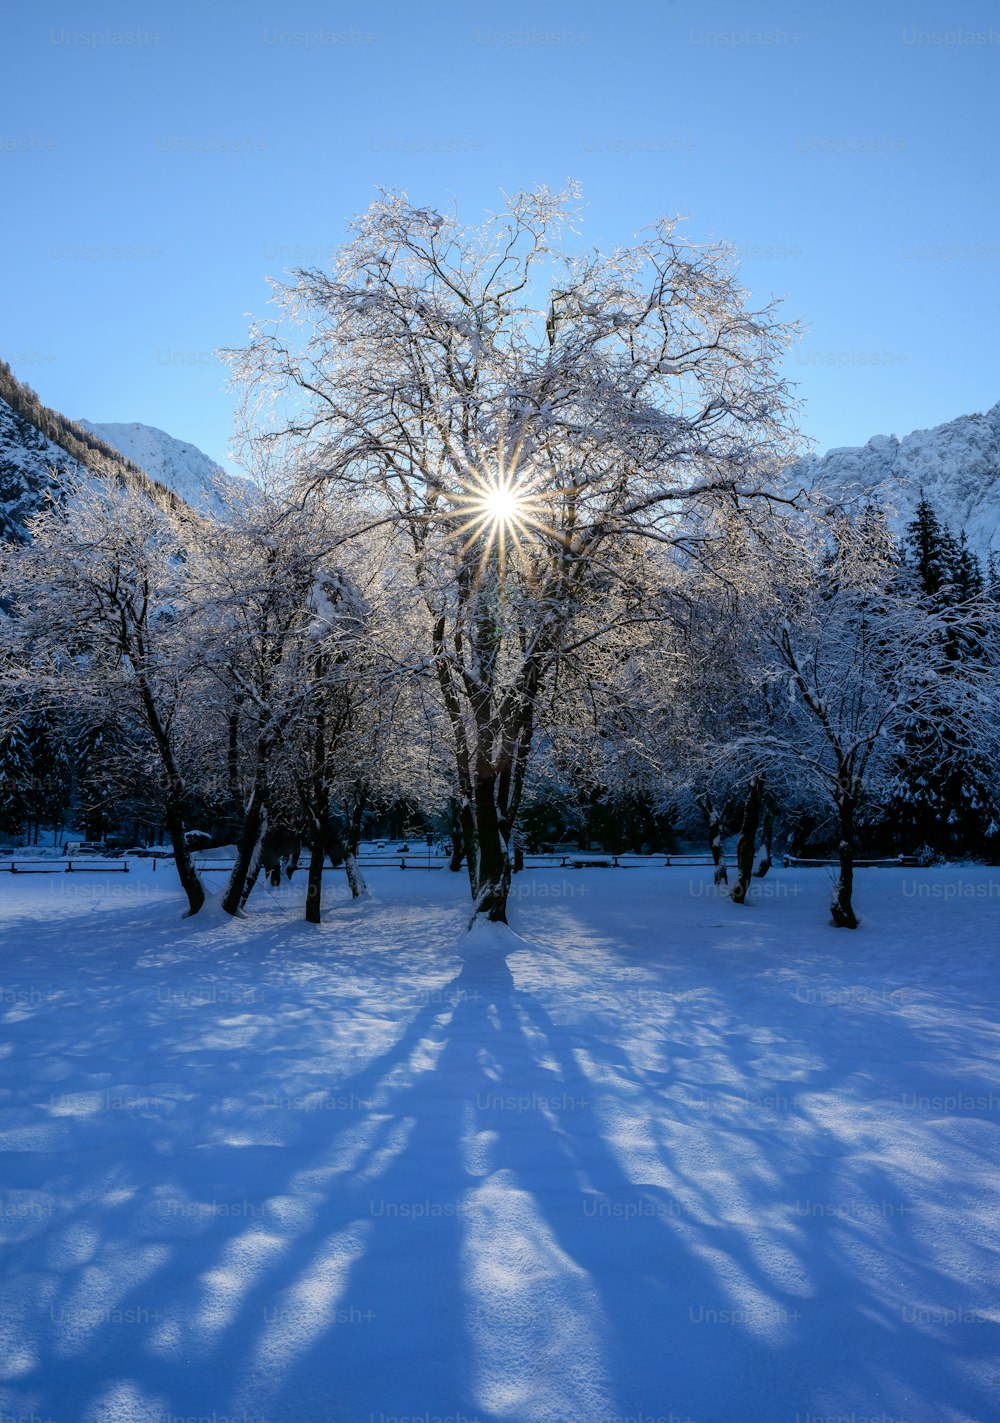 Il sole splende luminoso tra gli alberi nella neve